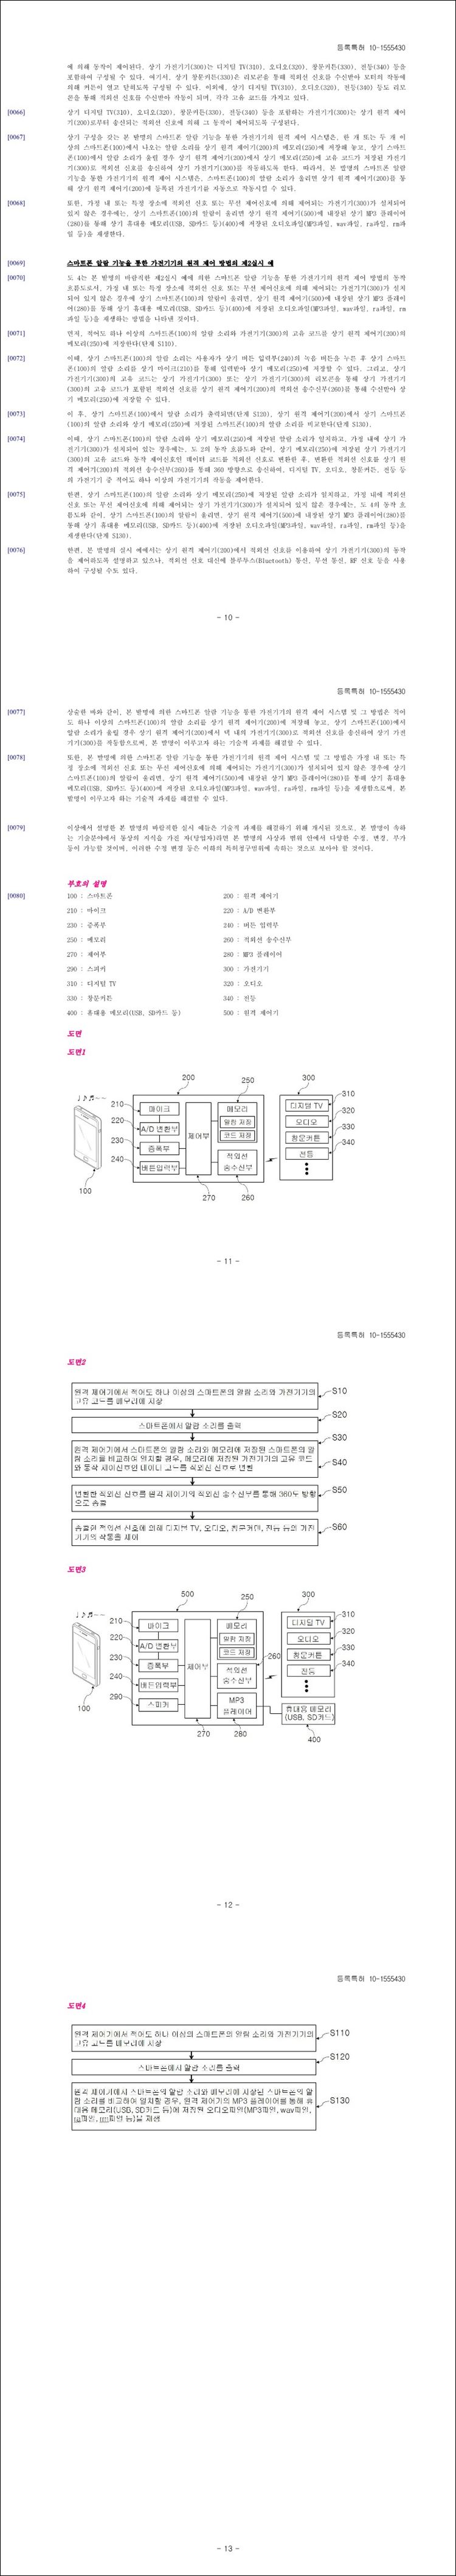 특허 제10-1555430호(스마트폰 알람 기능을 통한 가전기기의 원격 제어 시스템 및 그 방법, (주)이엠시스텍)